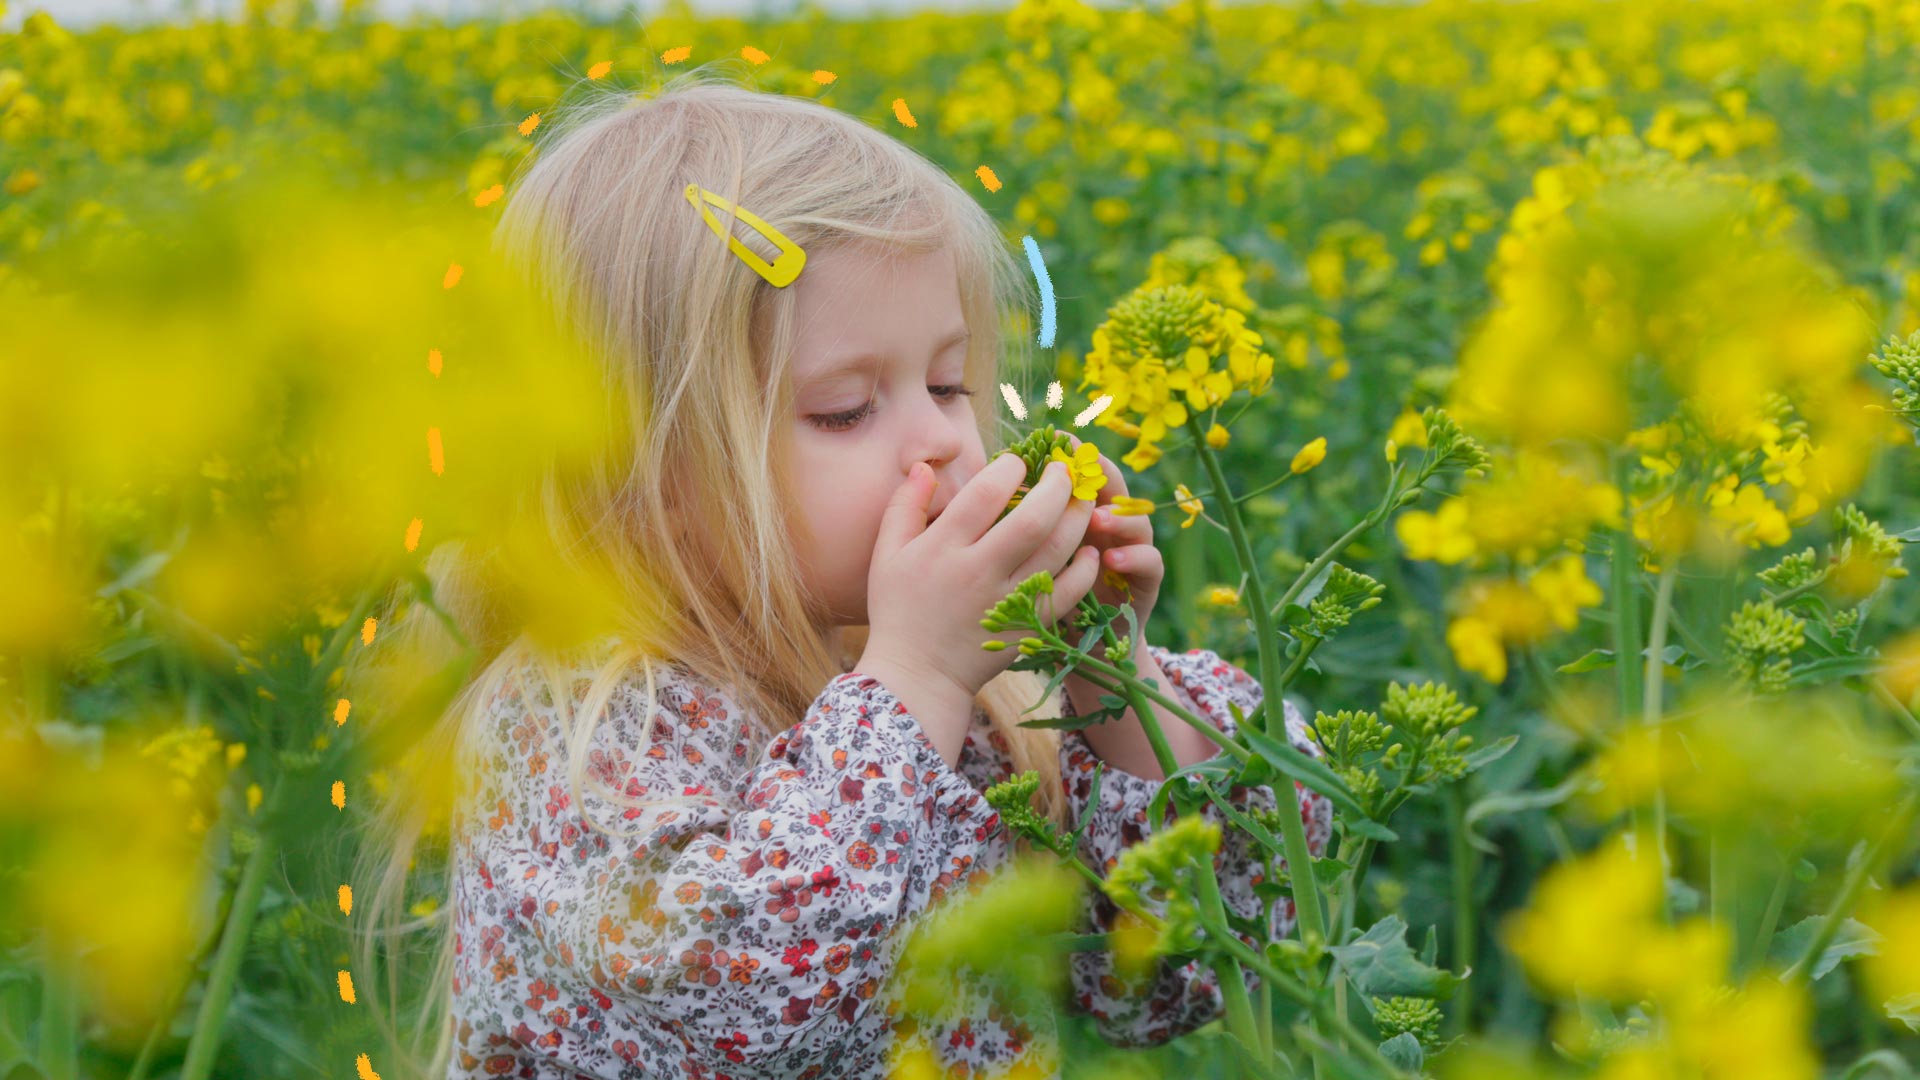 Na imagem, uma menina de cabelos loiros está de olhos fechados, trazendo um ramo de flores com as mãos para perto do nariz.